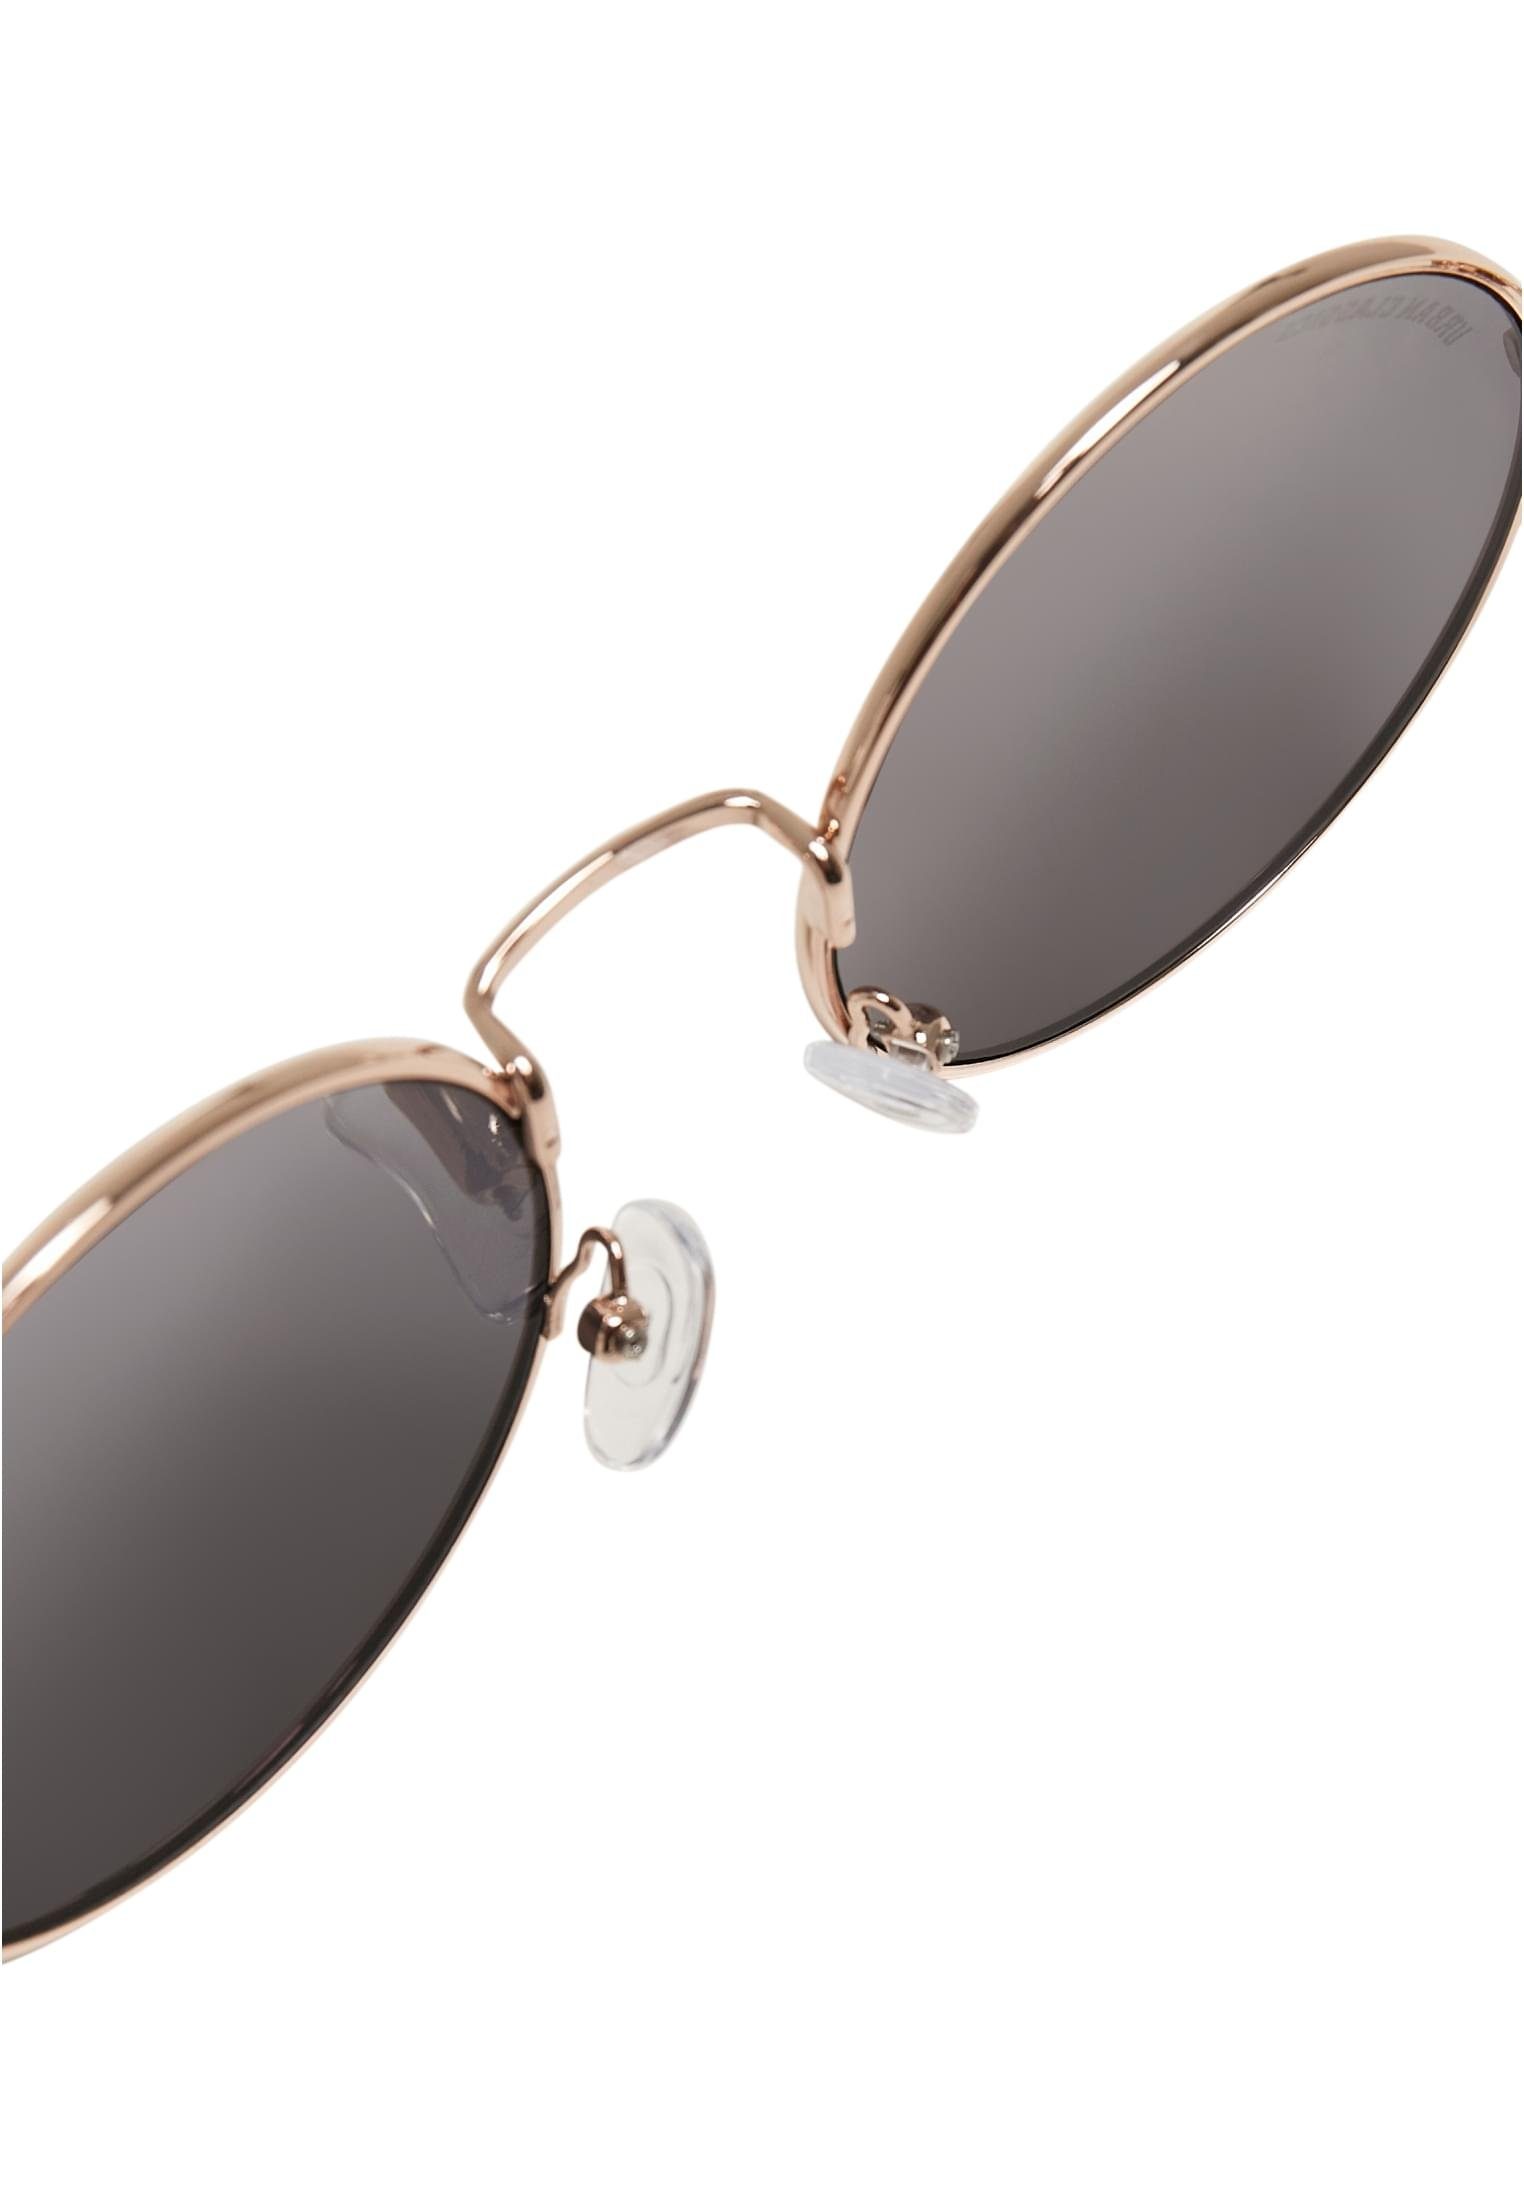 Sonnenbrille UC Accessoires gold/blk Sunglasses 107 CLASSICS URBAN